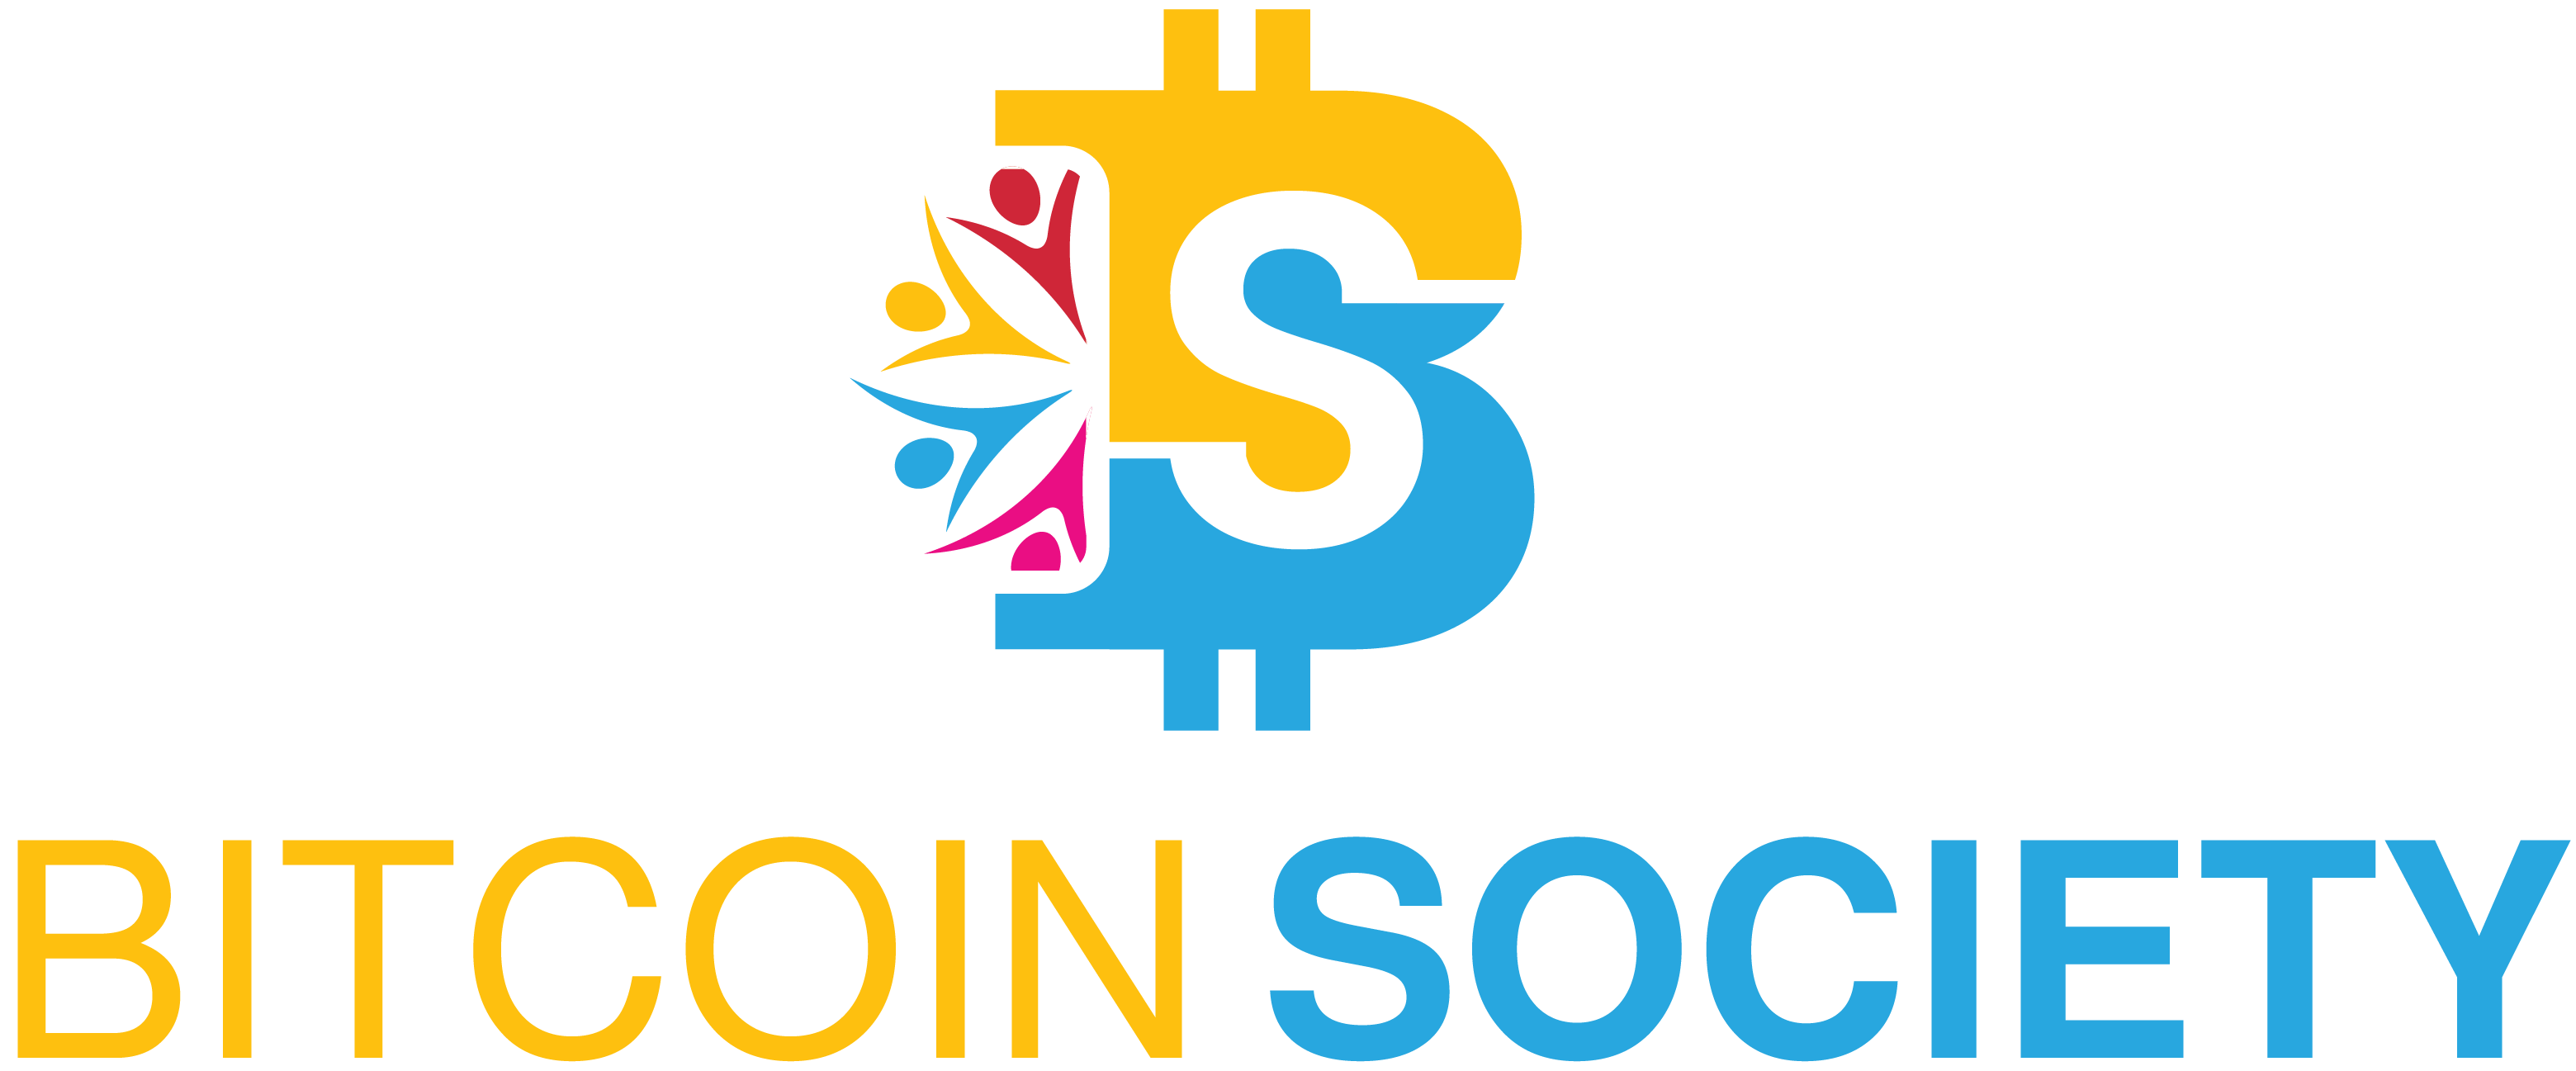 Bitcoin Society - Tým Bitcoin Society